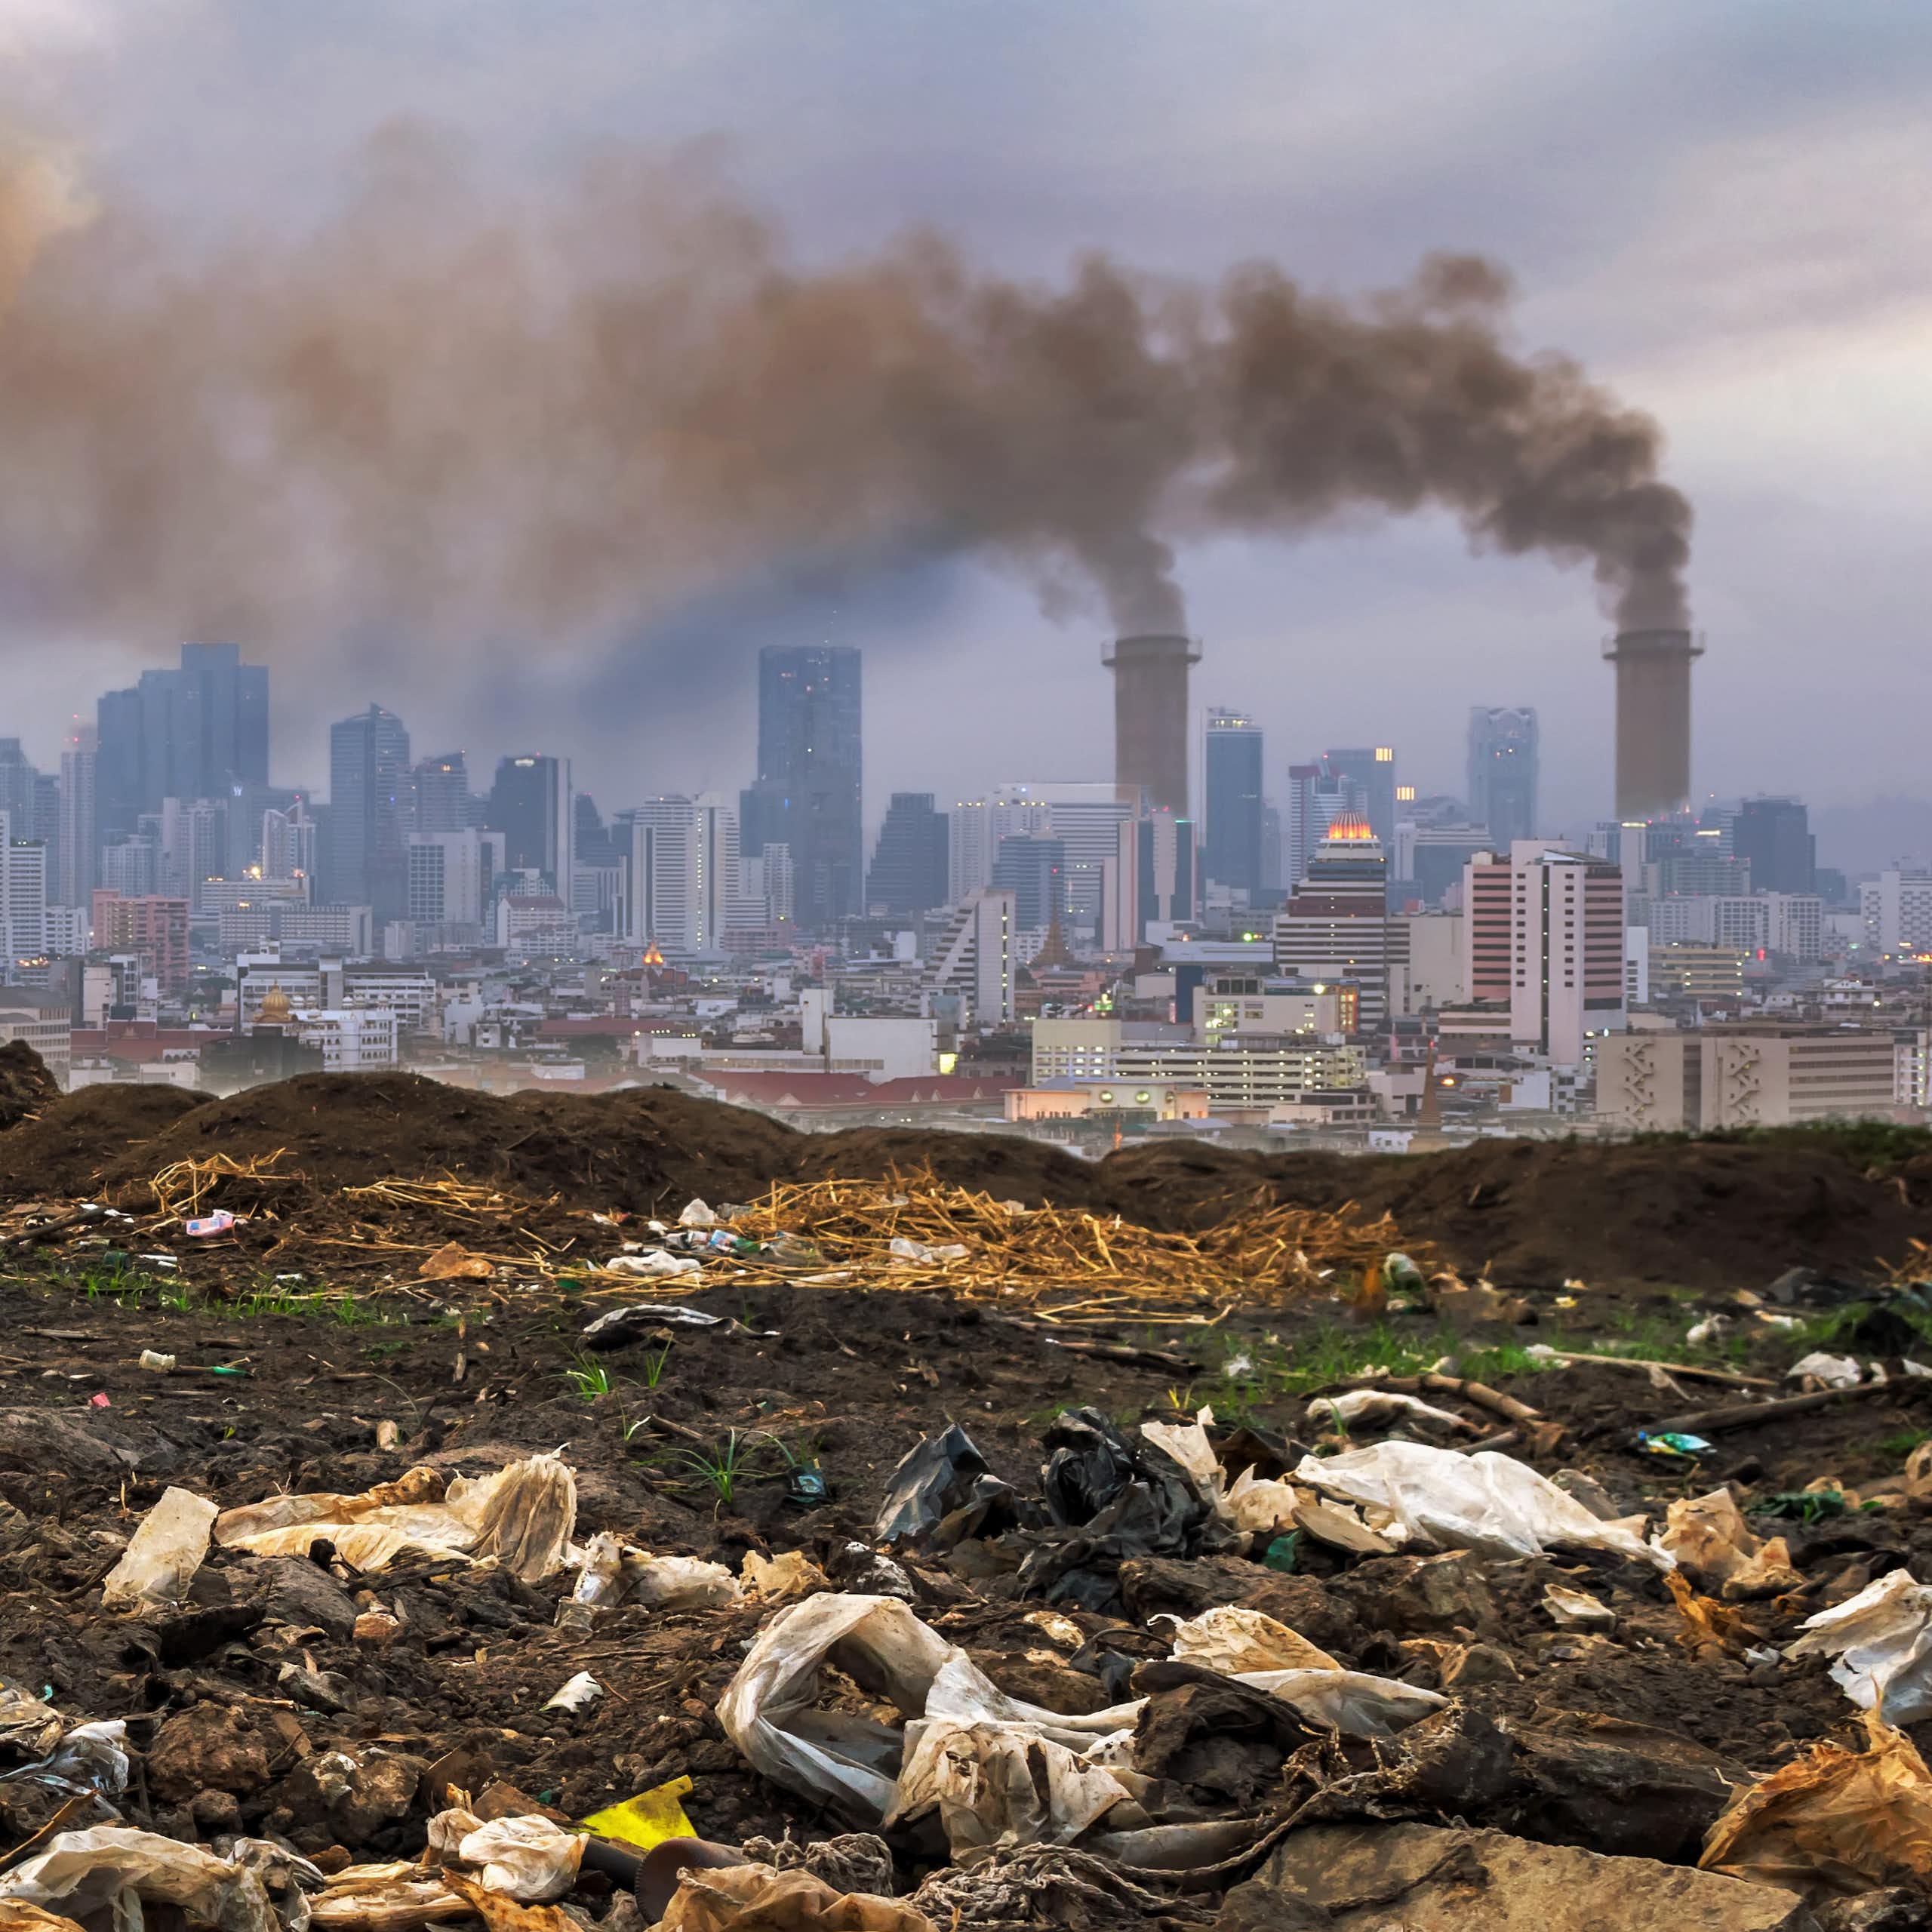 Waste on ground, polluting chimneys in background